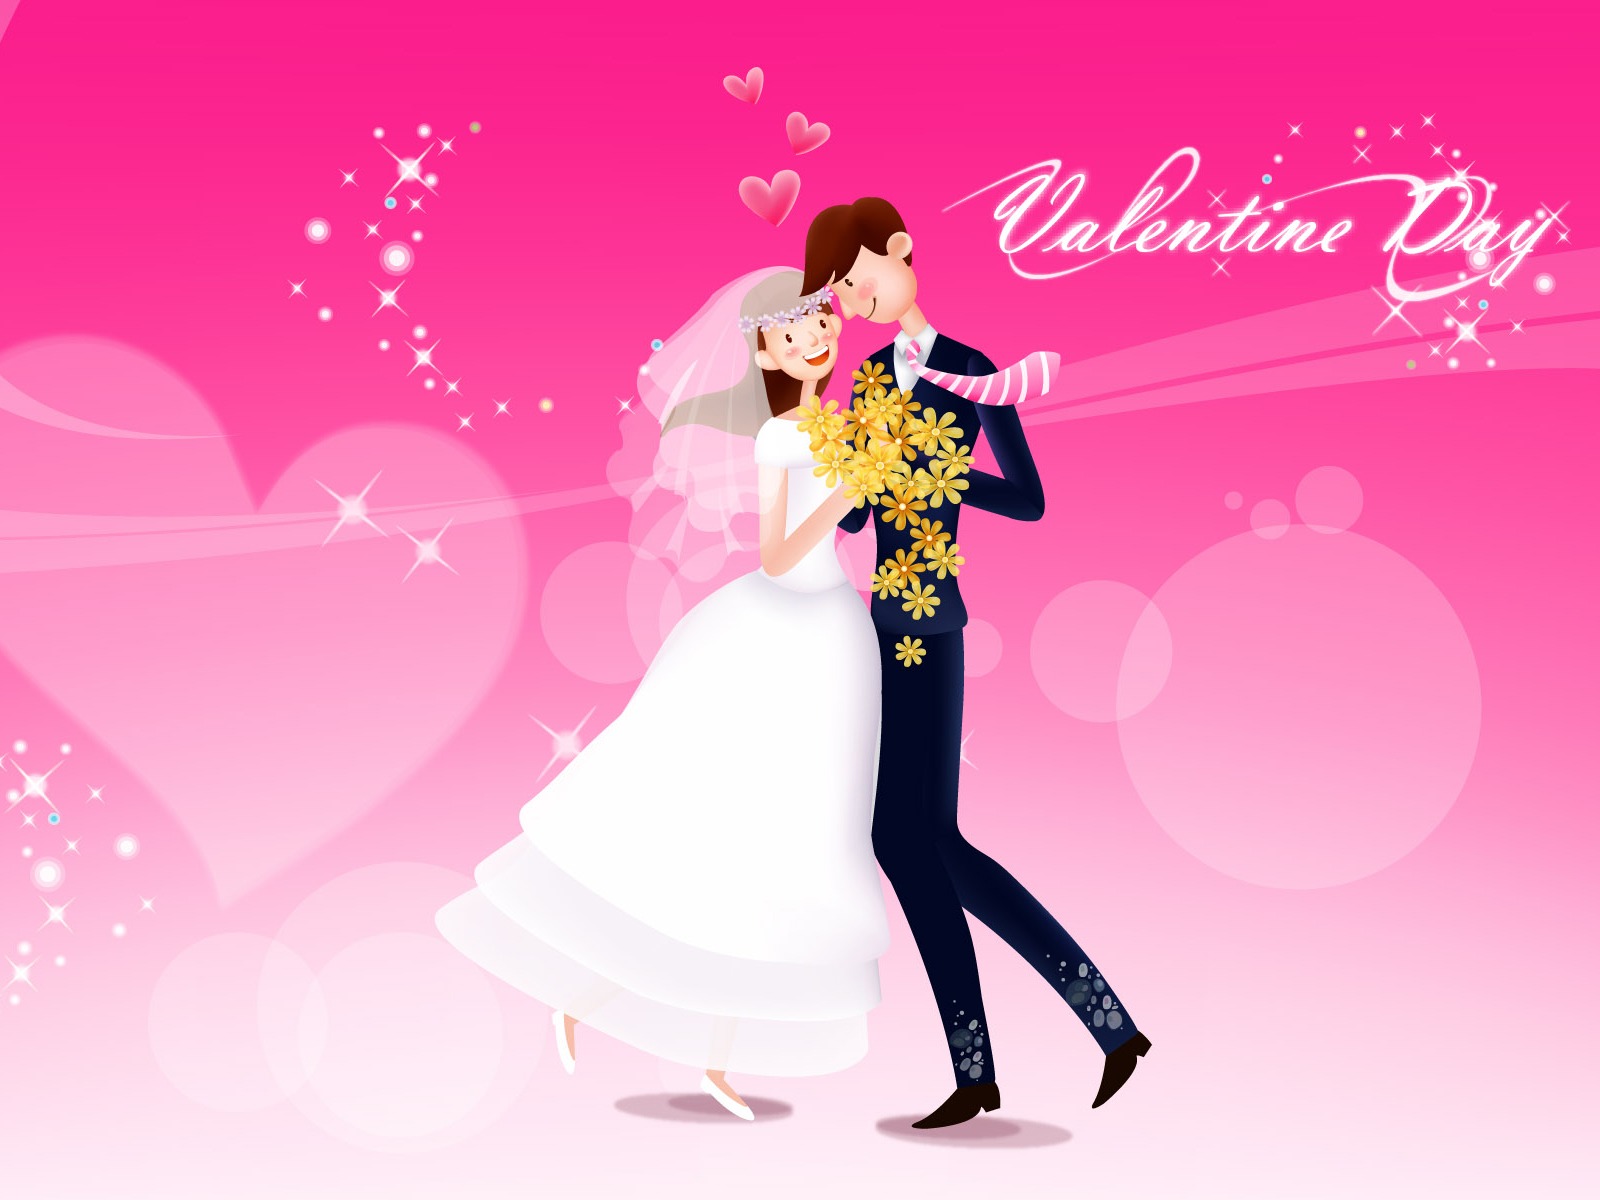 amore carta da parati a tema,rosa,evento,vestito formale,san valentino,romanza